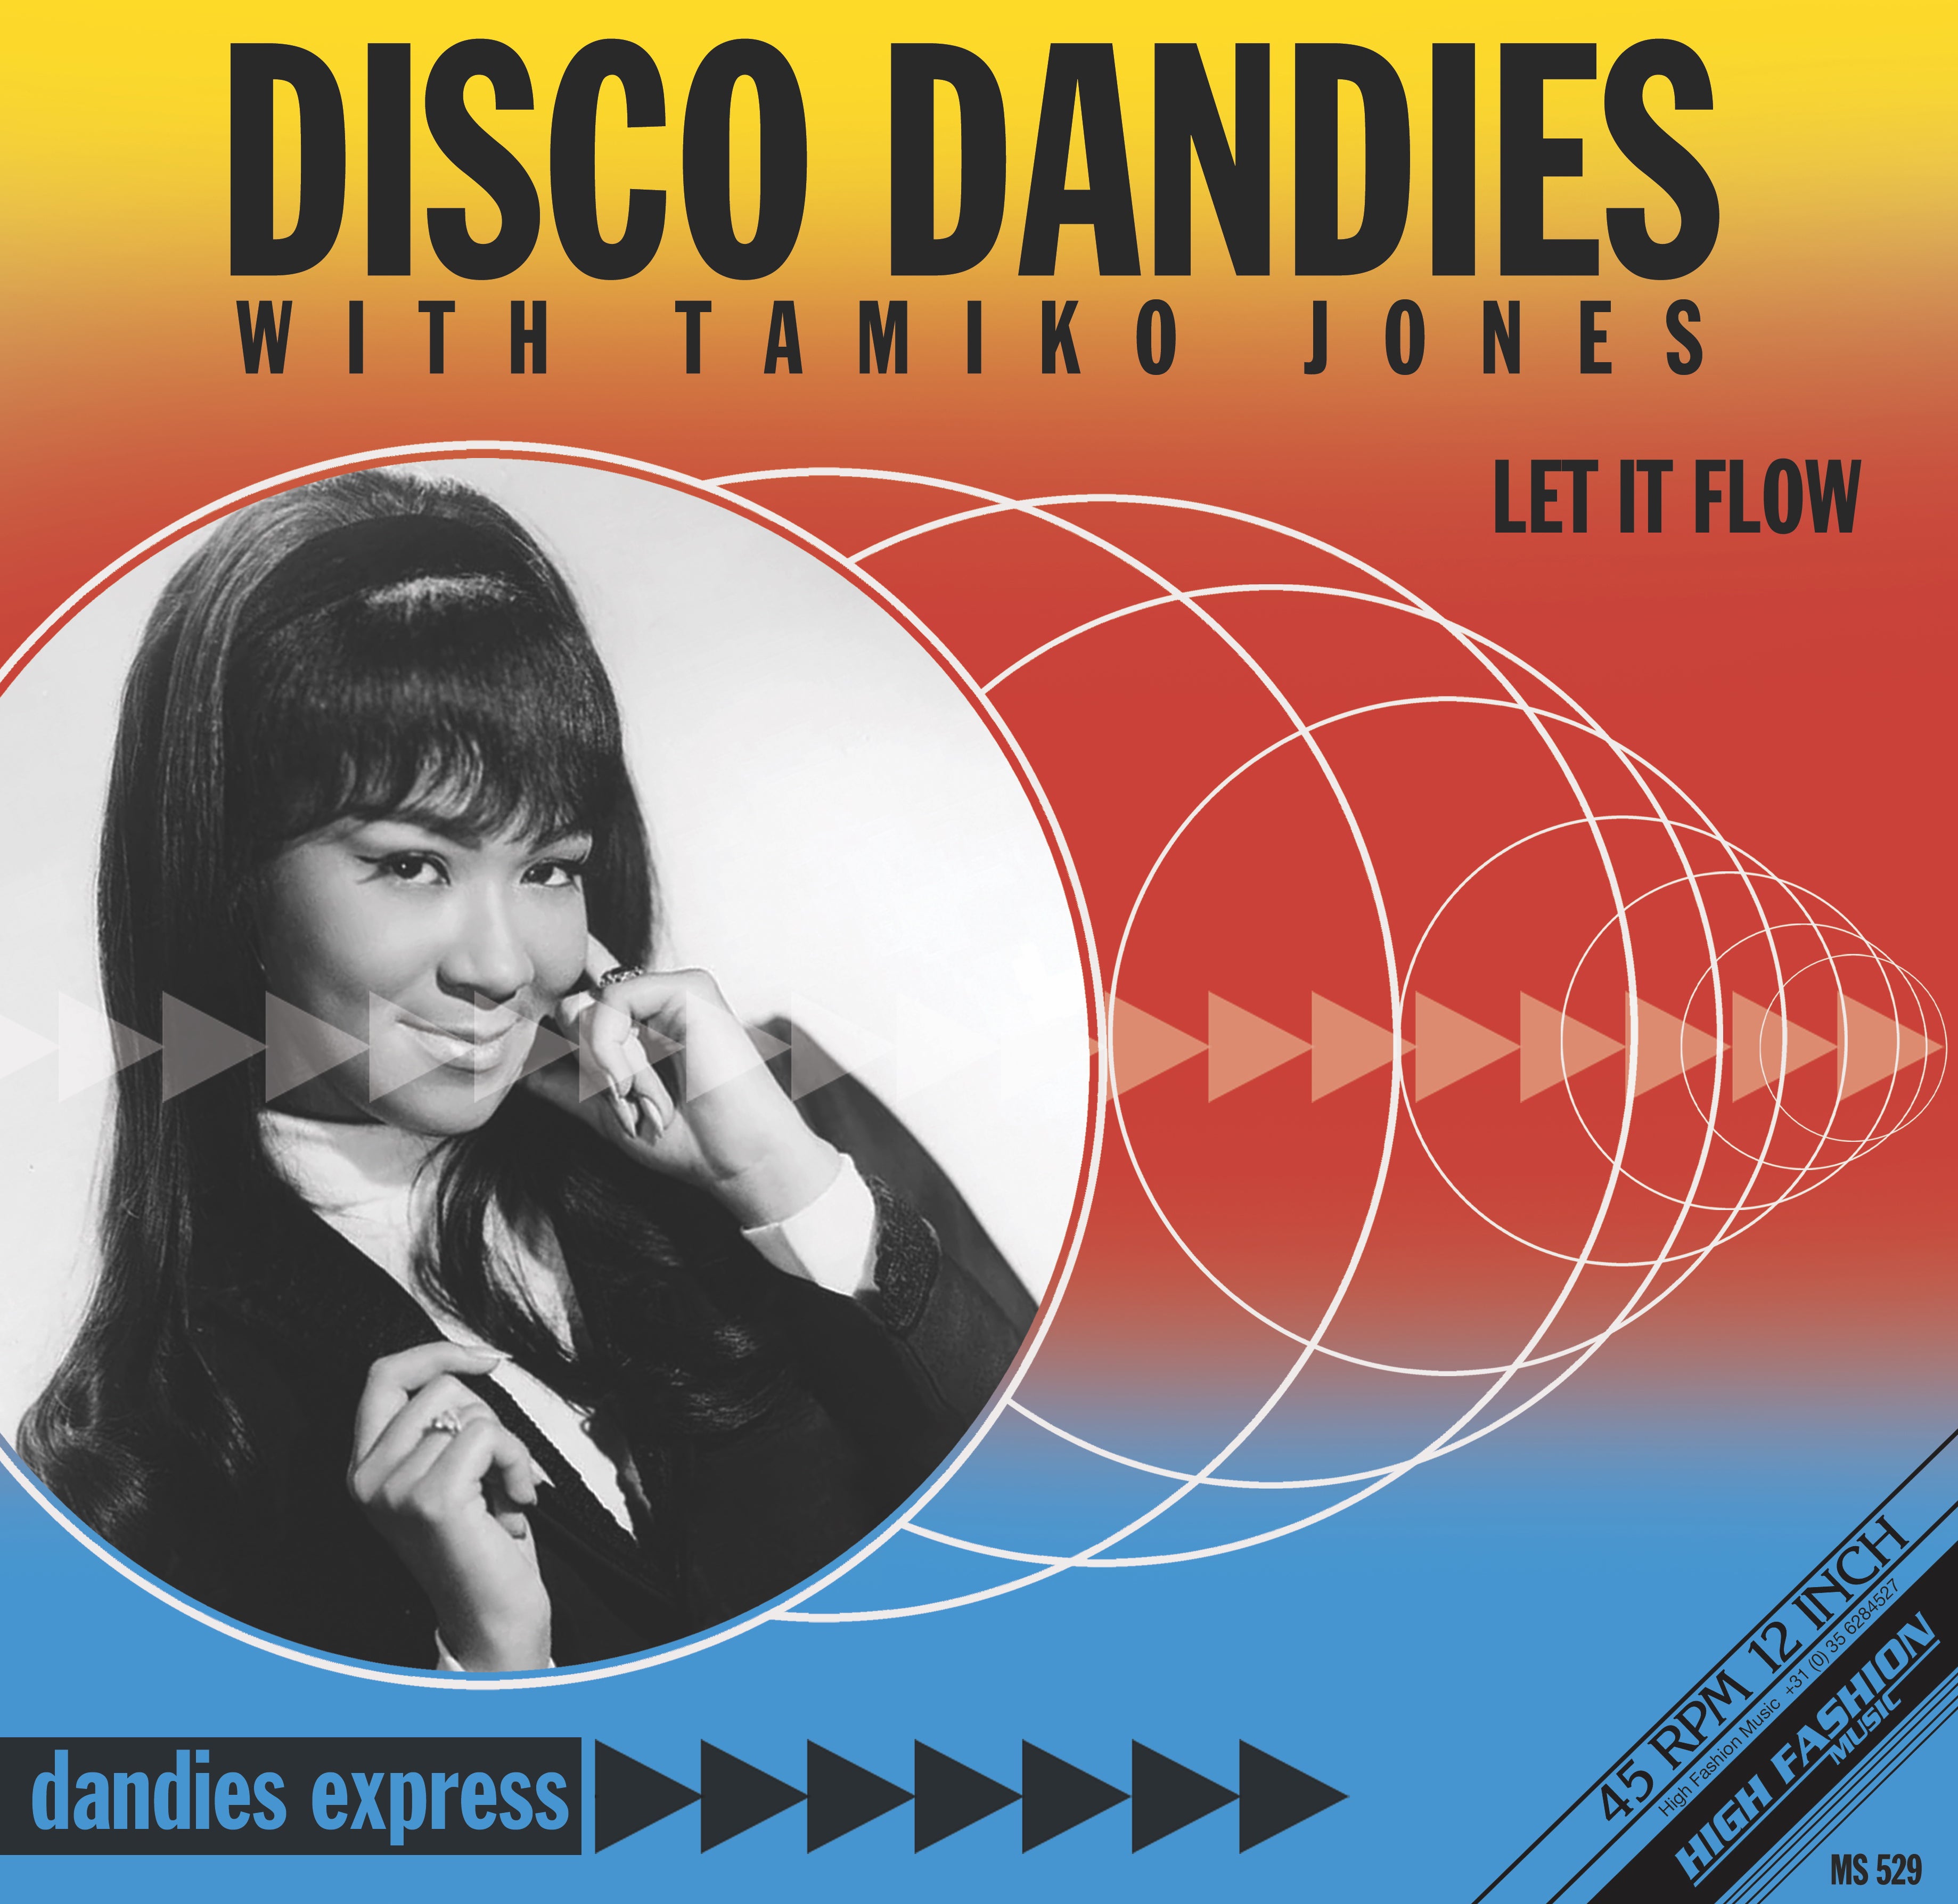 Disco Dandies With Tamiko Jones – Let It Flow